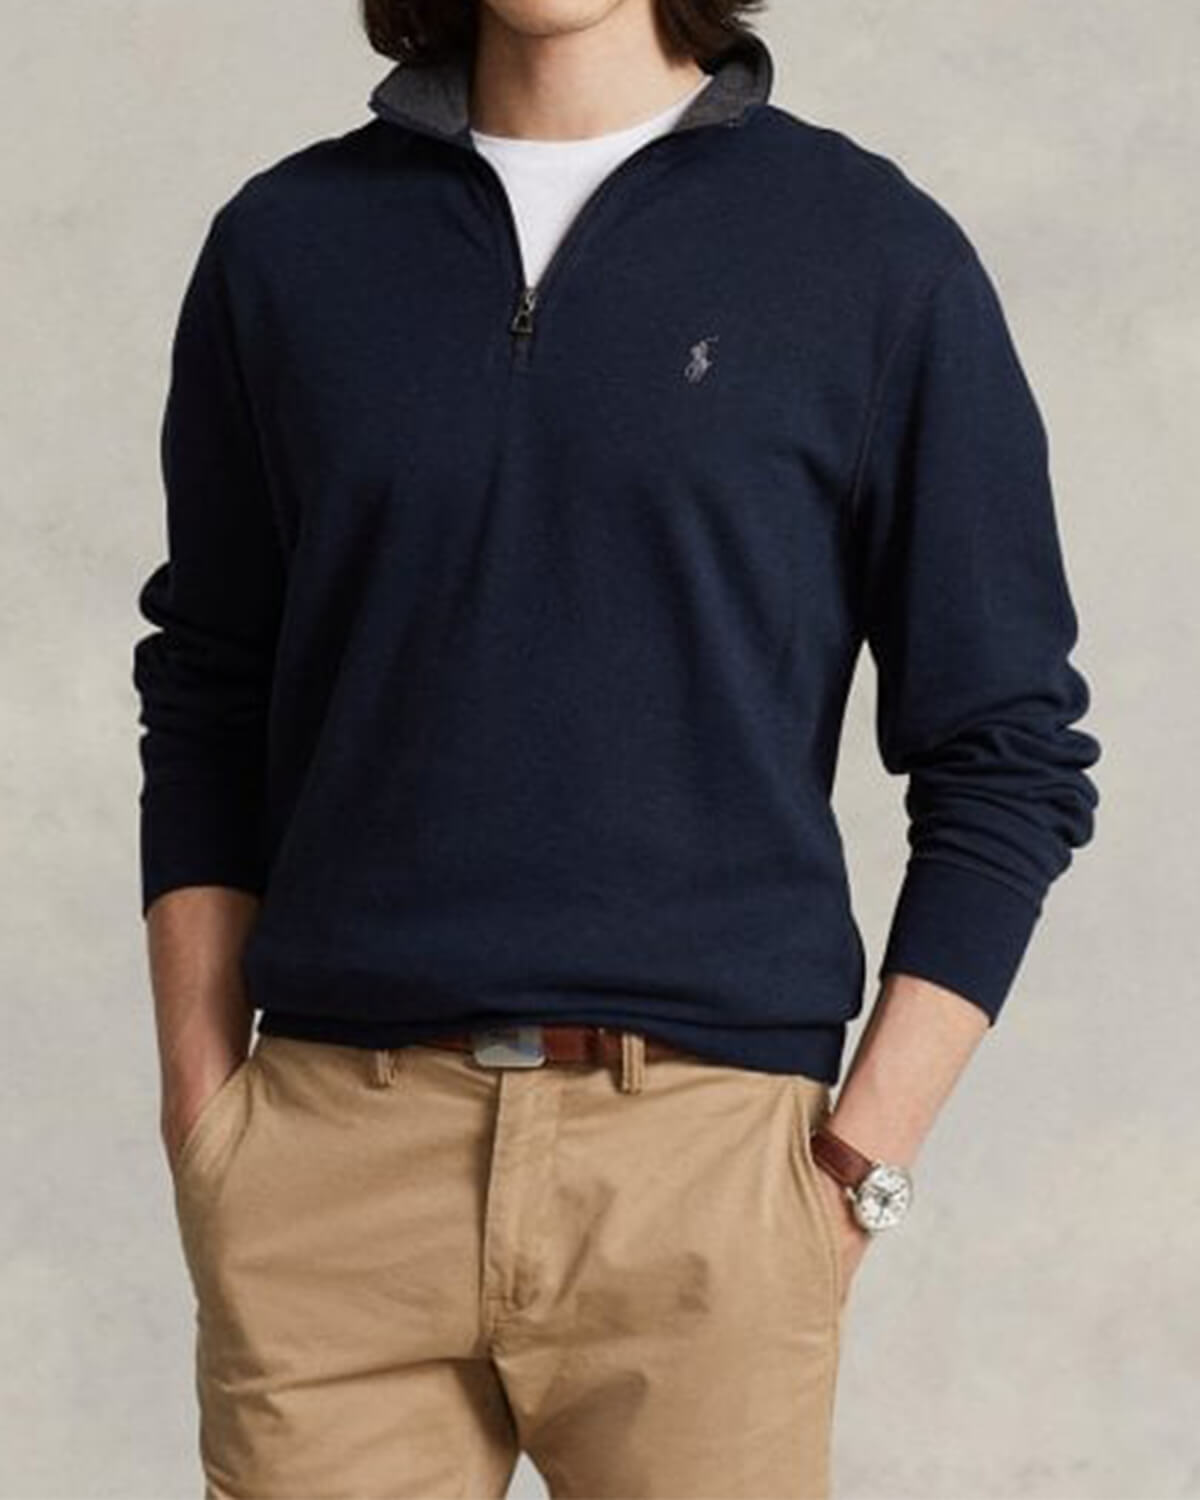 Ανδρική Μακρυμάνικη Μπλούζα Polo Ralph Lauren - Lshzm1